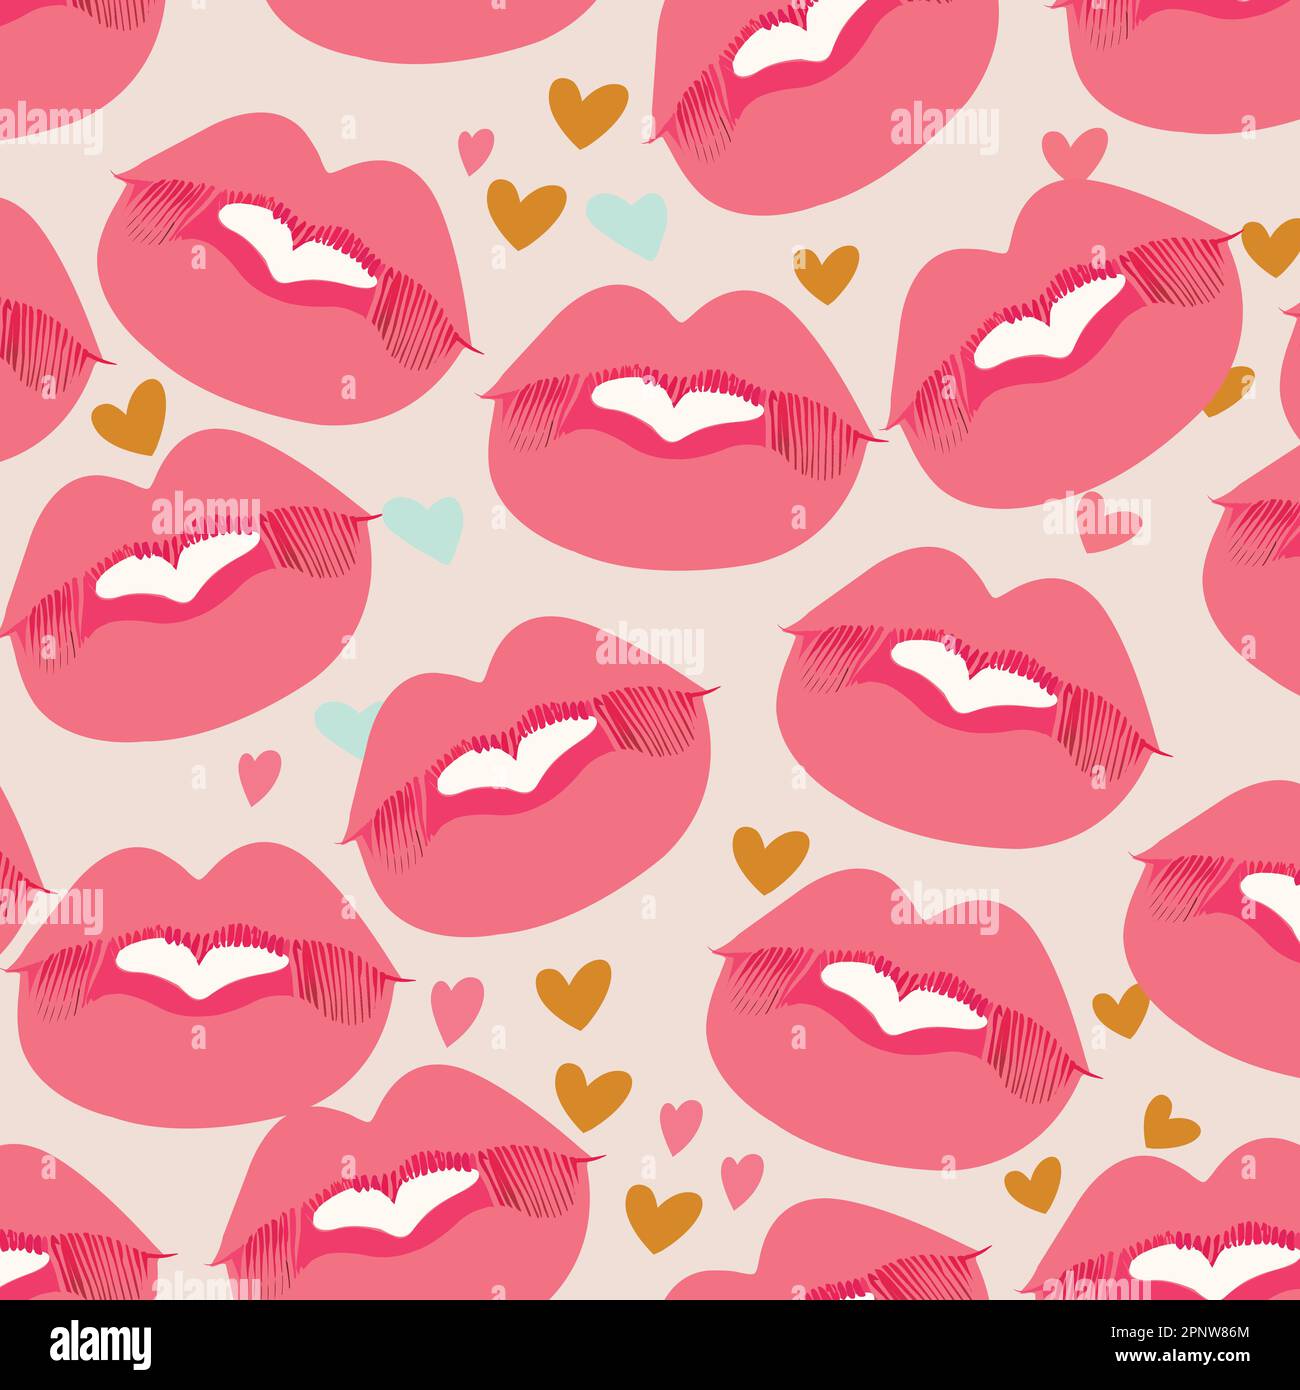 Pastellroter Hintergrund Für Lippen- Und Herzmuster. Love or Valentine's Day Concept (Konzept für Liebe oder Valentinstag) Stock Vektor